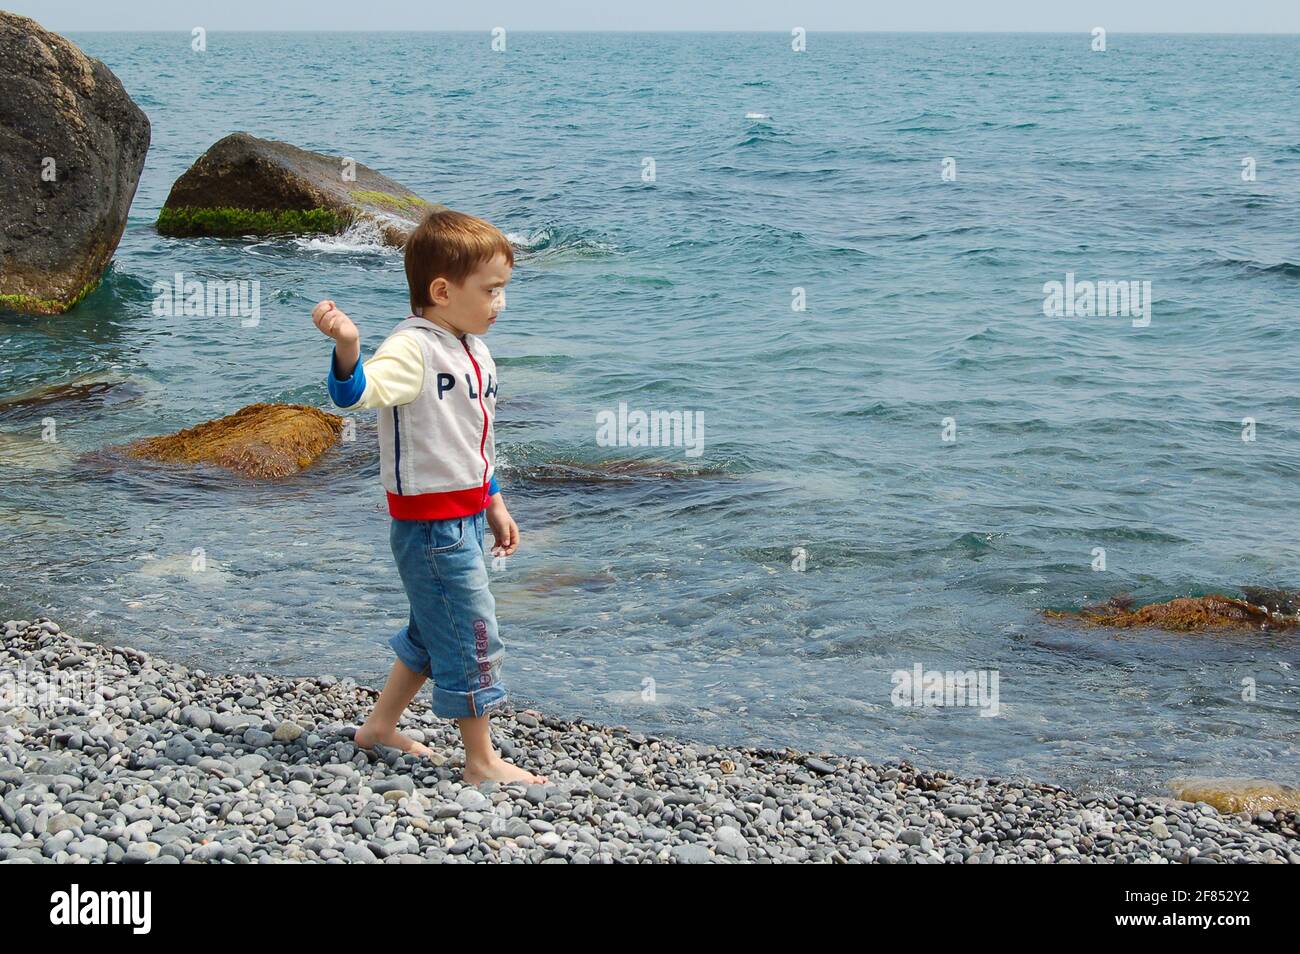 Yalta, Ukraine - 03.05.2009: Un garçon court le long de la mer. Les enfants adorent jouer avec les rochers sur la plage de galets. Banque D'Images